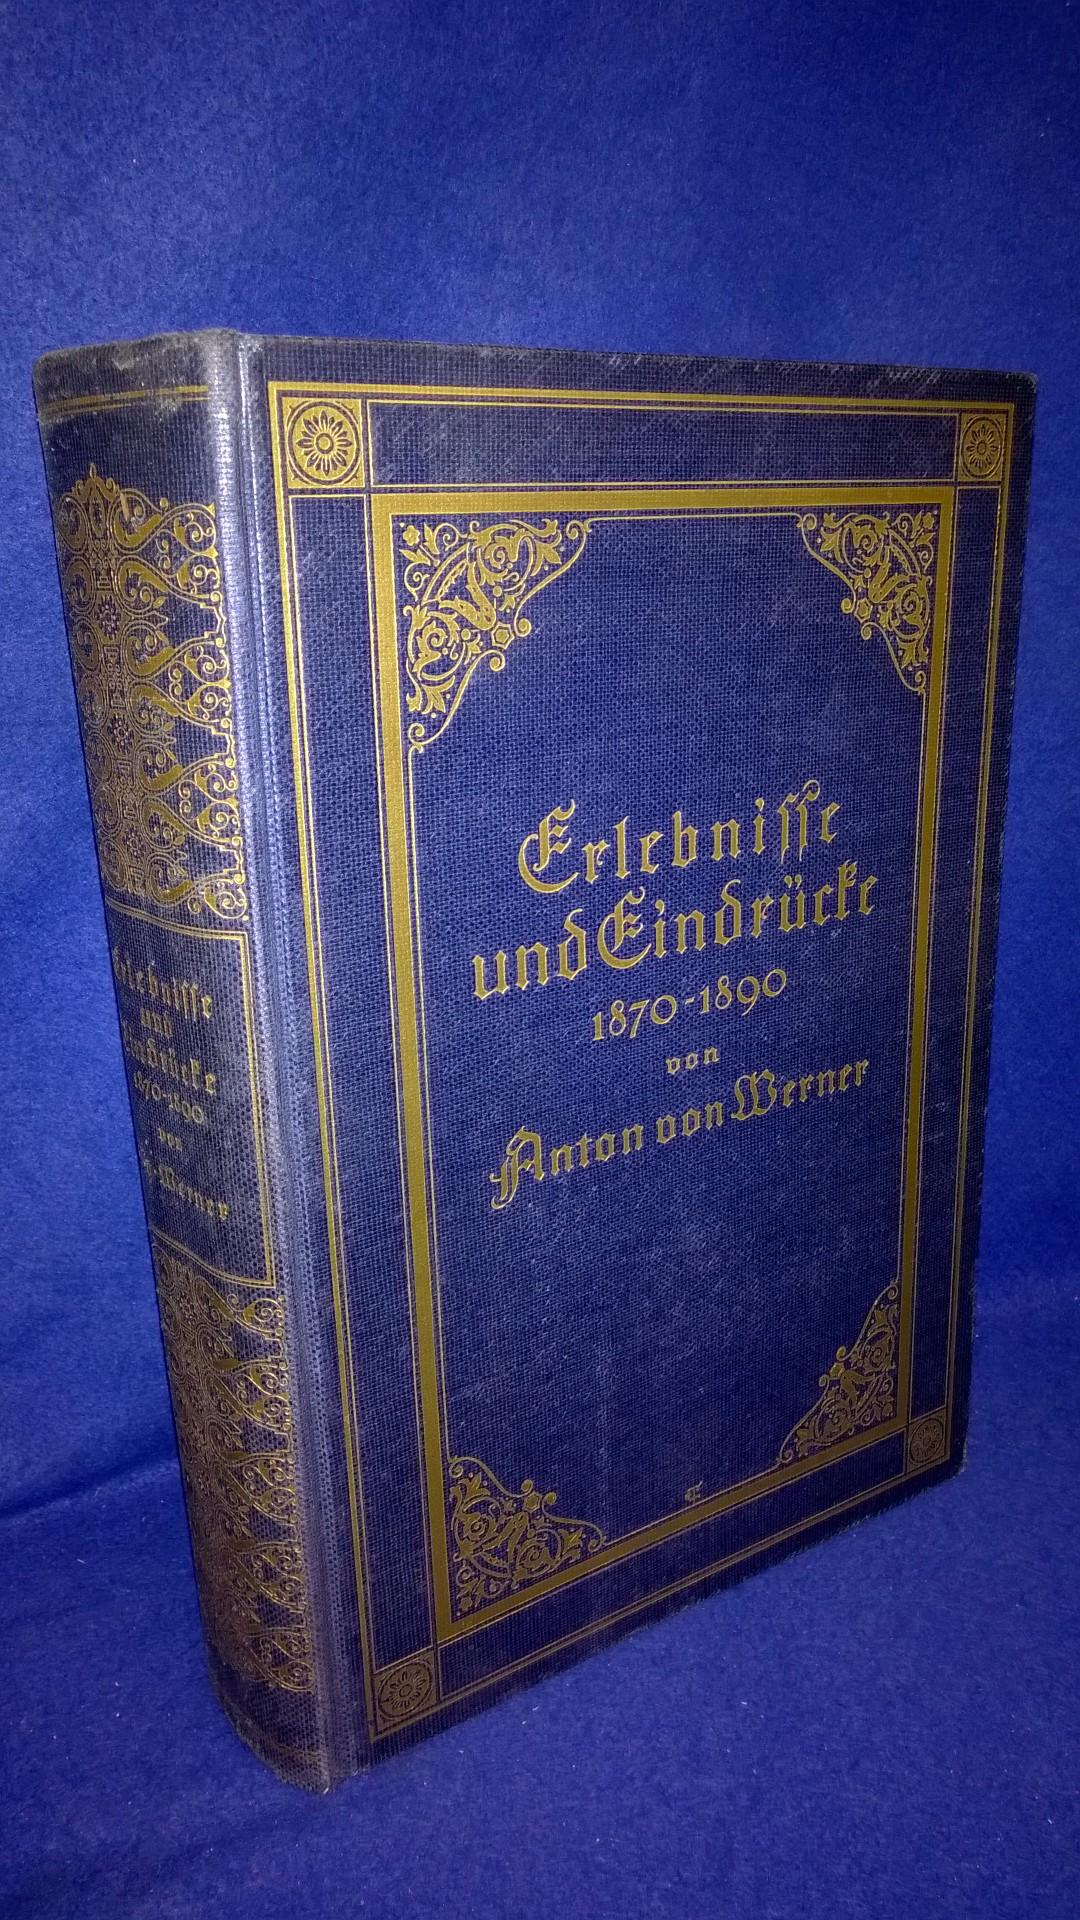 Erlebnisse und Eindrücke 1870-1890.